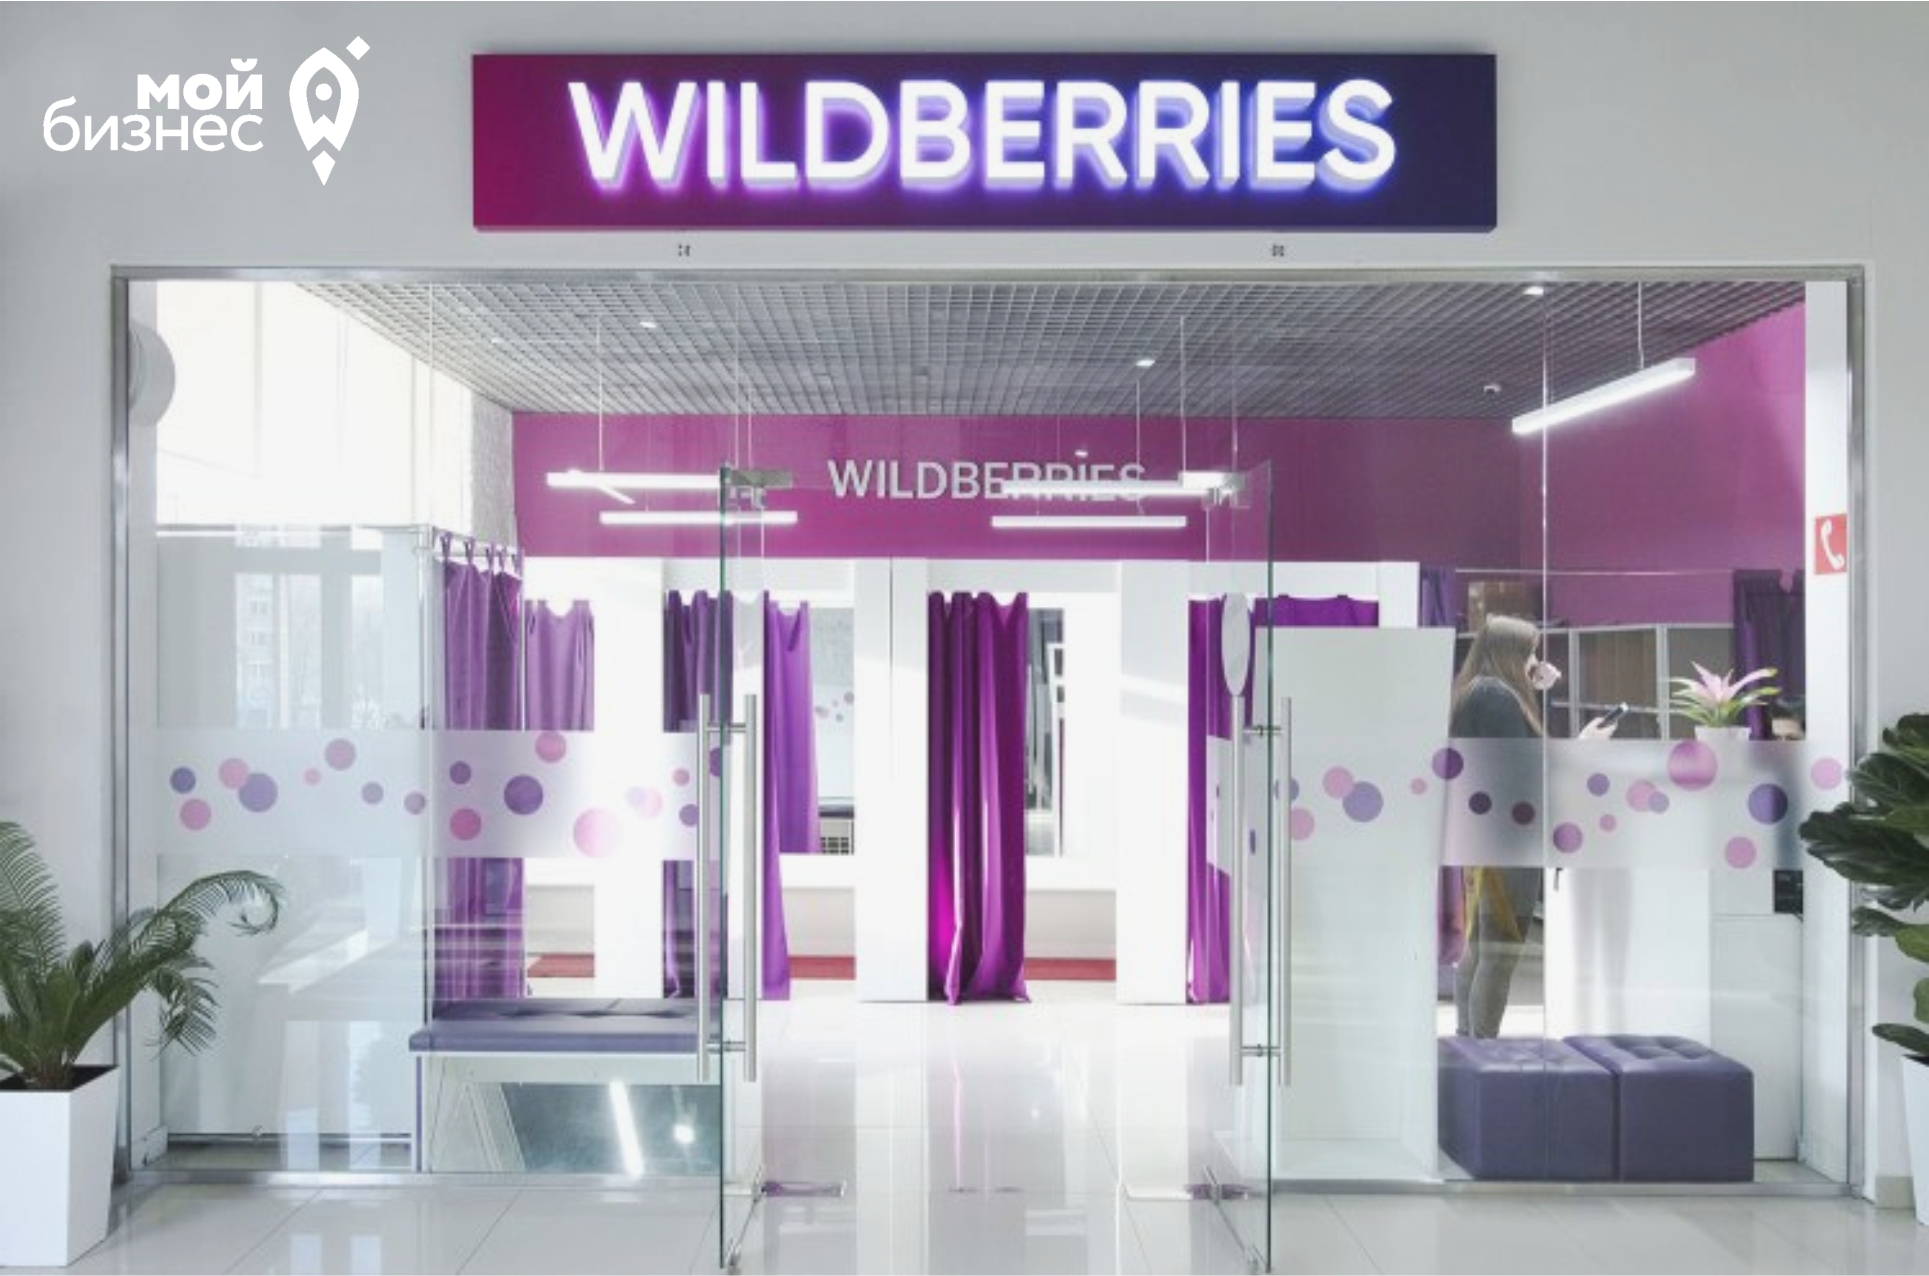 Продажи региональных продавцов на Wildberries в 2022 году выросли на 166%